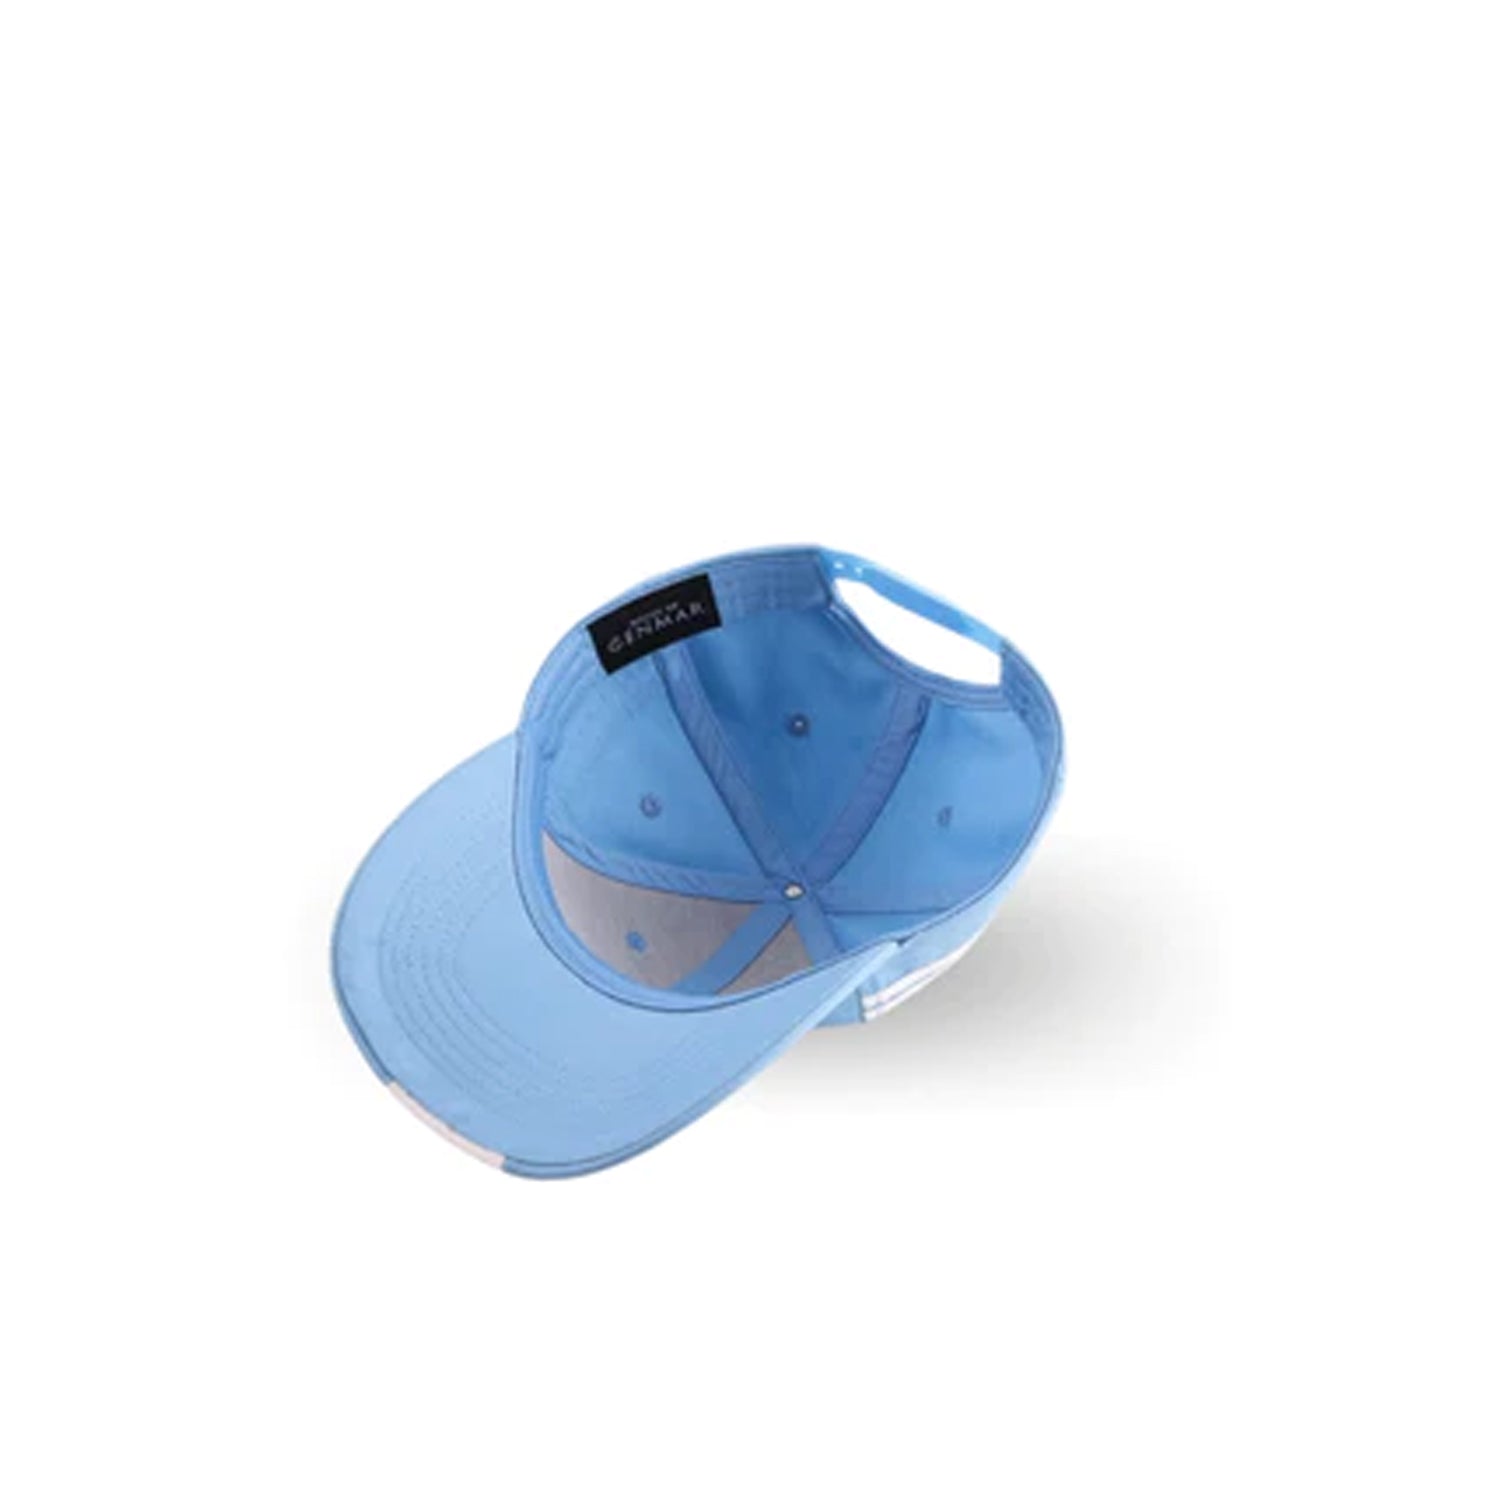 قبعة بيسبول زرقاء للأطفال من هاوس أوف سينمار